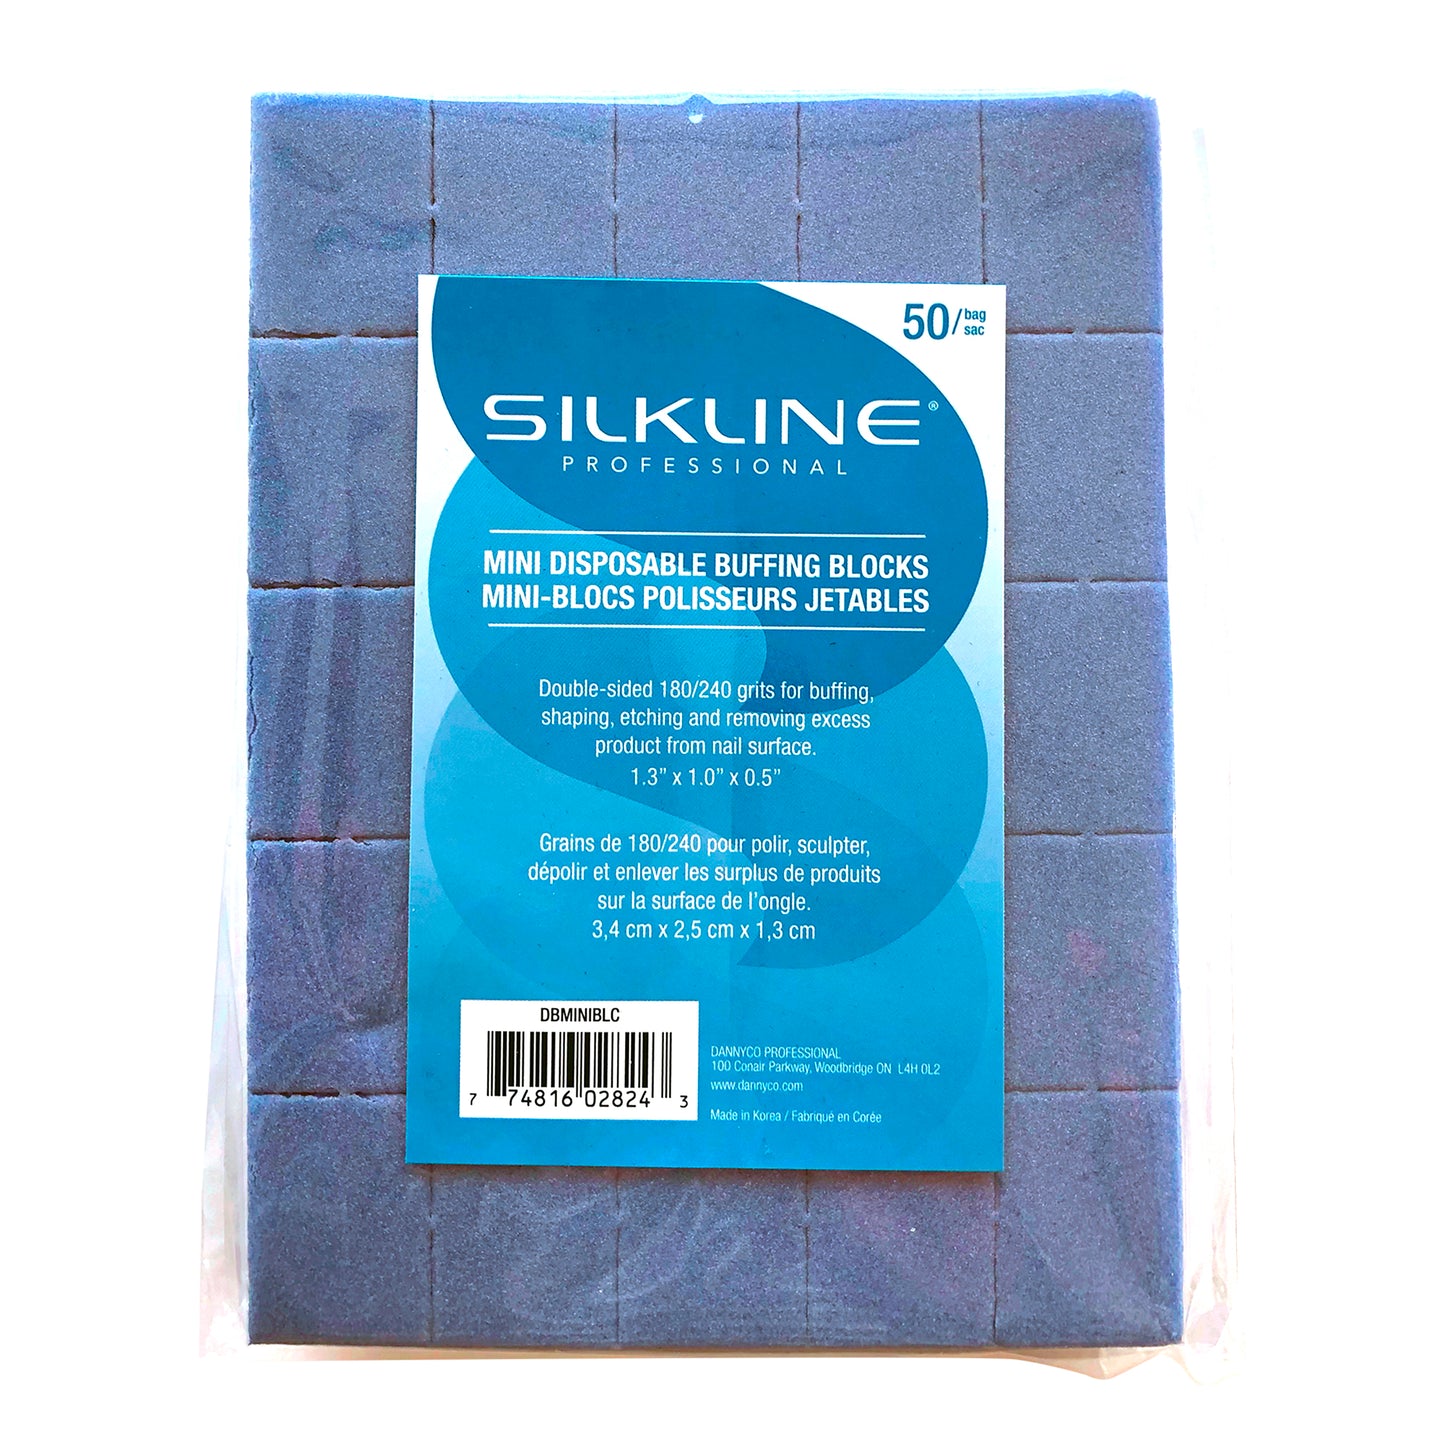 Mini-blocs Silkline polisher 50/pqt 180/240